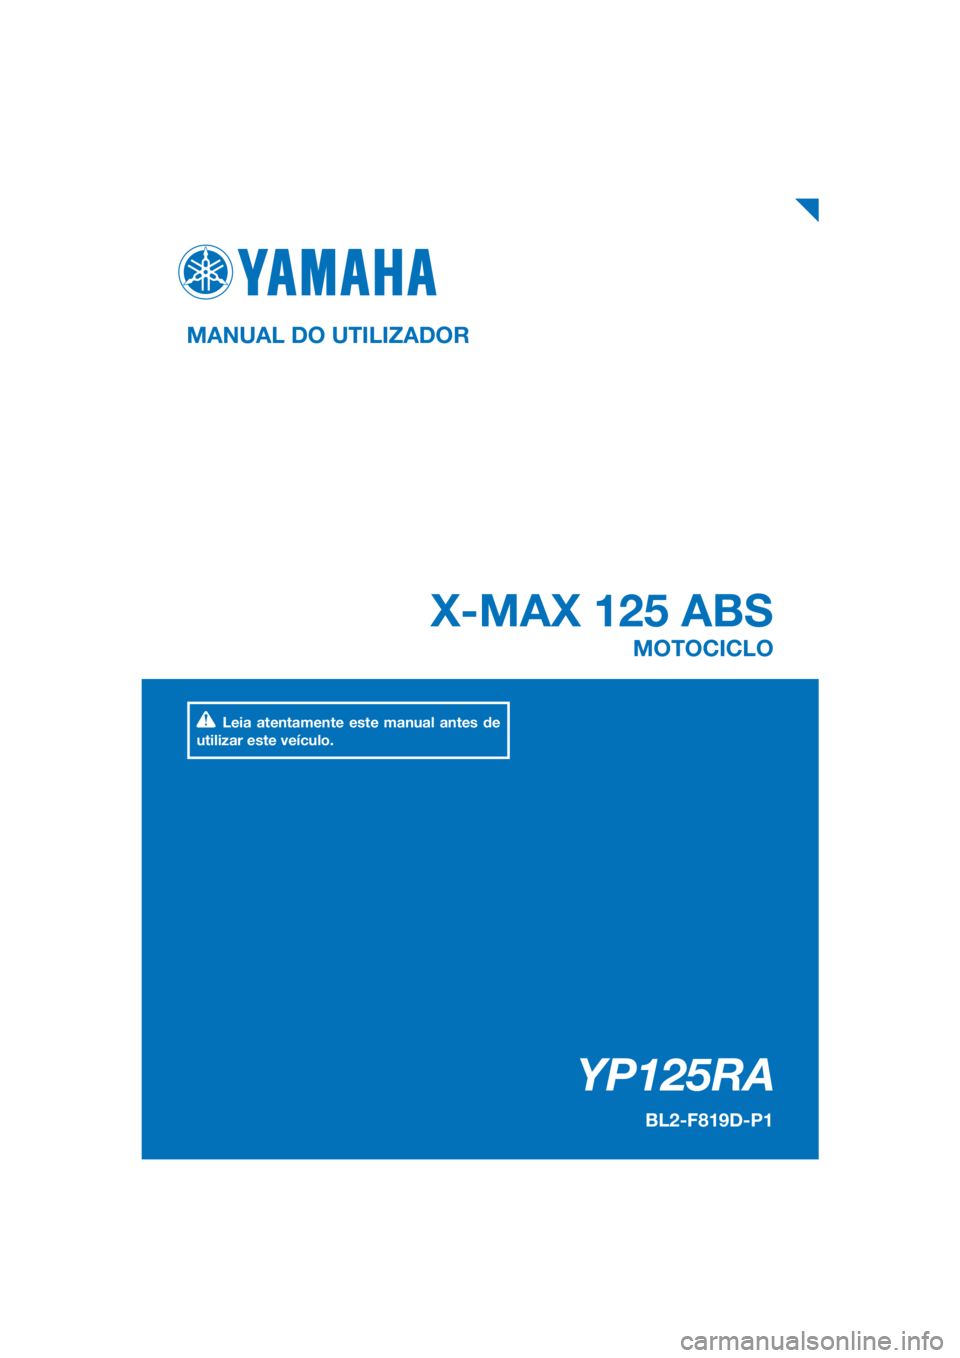 YAMAHA XMAX 125 2018  Manual de utilização (in Portuguese) PANTONE285C
YP125RA
X-MAX 125 ABS
MANUAL DO UTILIZADOR
BL2-F819D-P1
MOTOCICLO
Leia atentamente este manual antes de 
utilizar este veículo.
[Portuguese  (P)] 